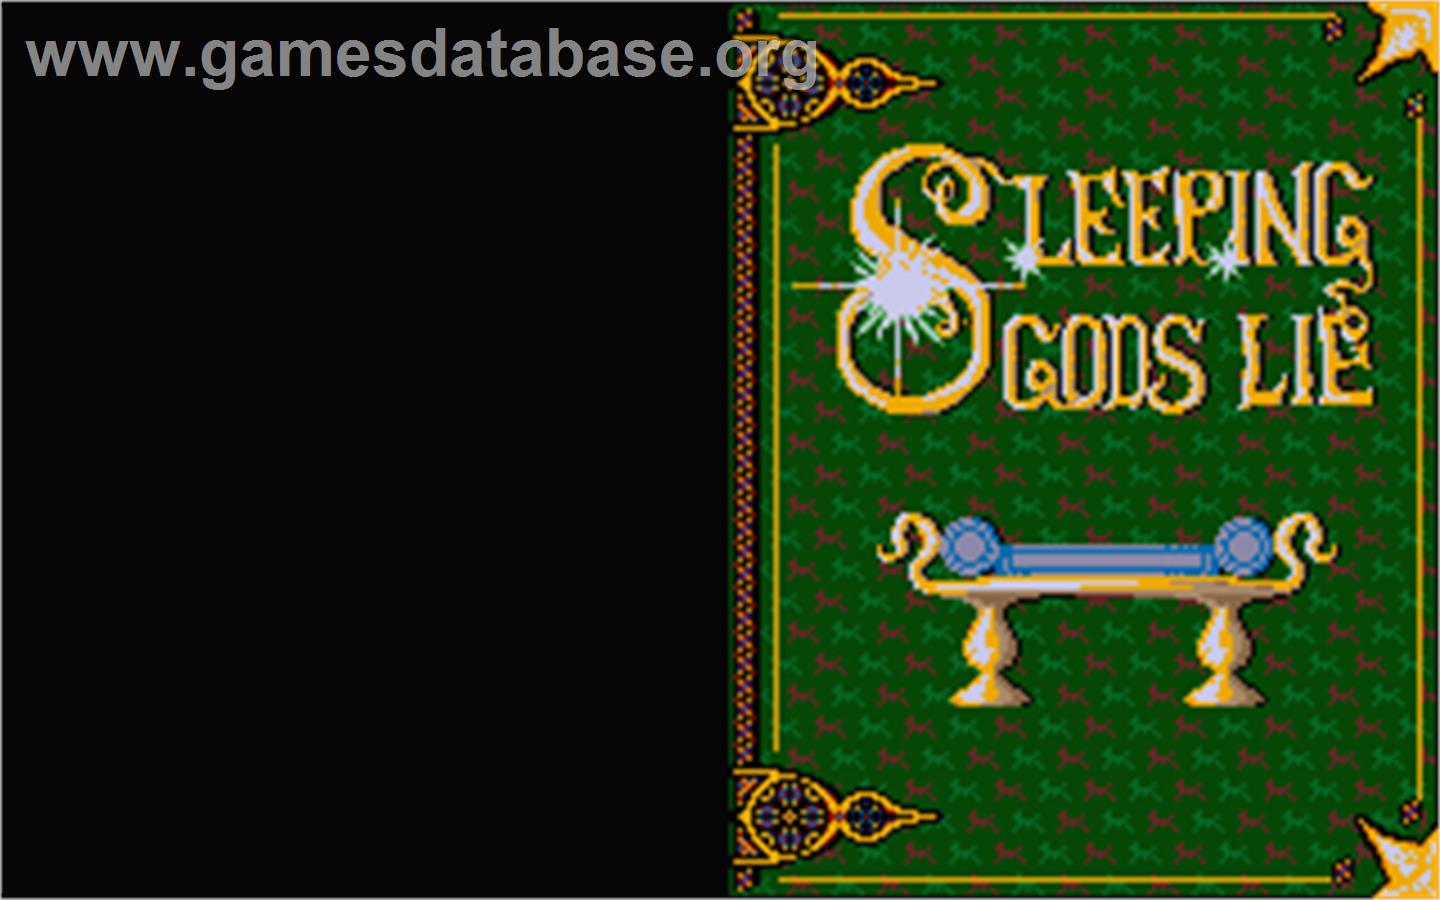 Sleeping Gods Lie - Atari ST - Artwork - Title Screen